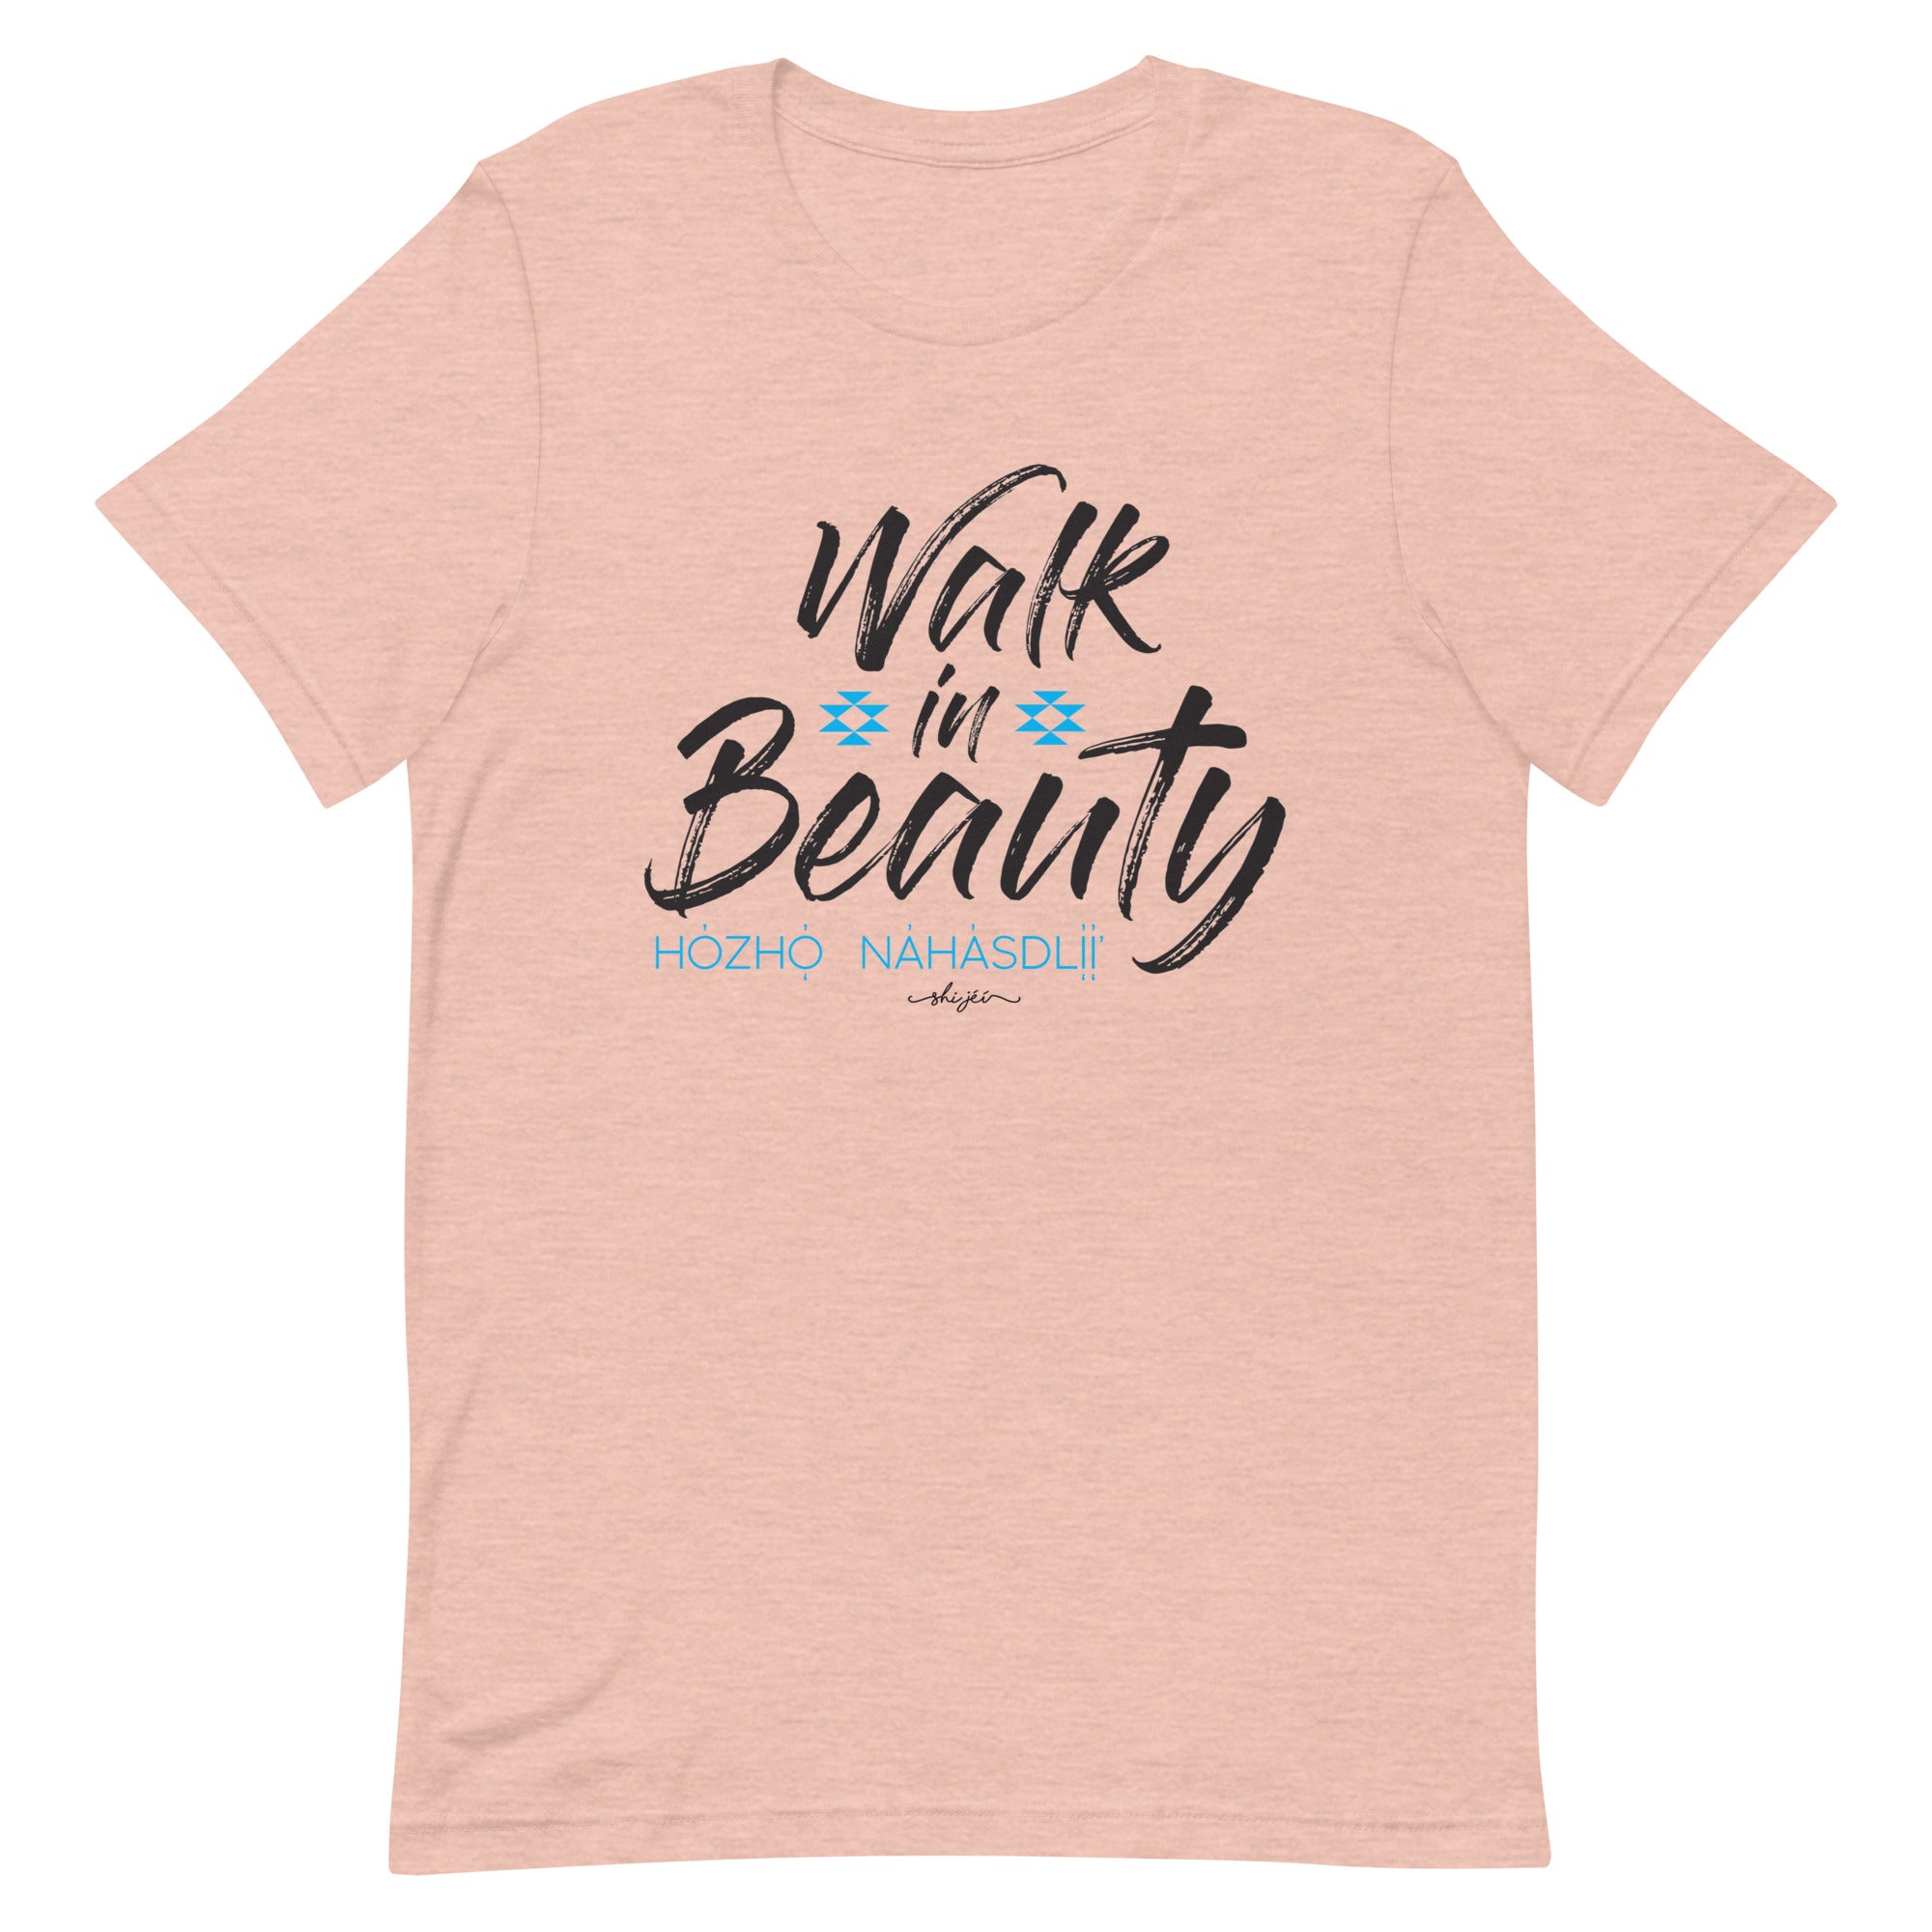 Walk in Beauty Tee